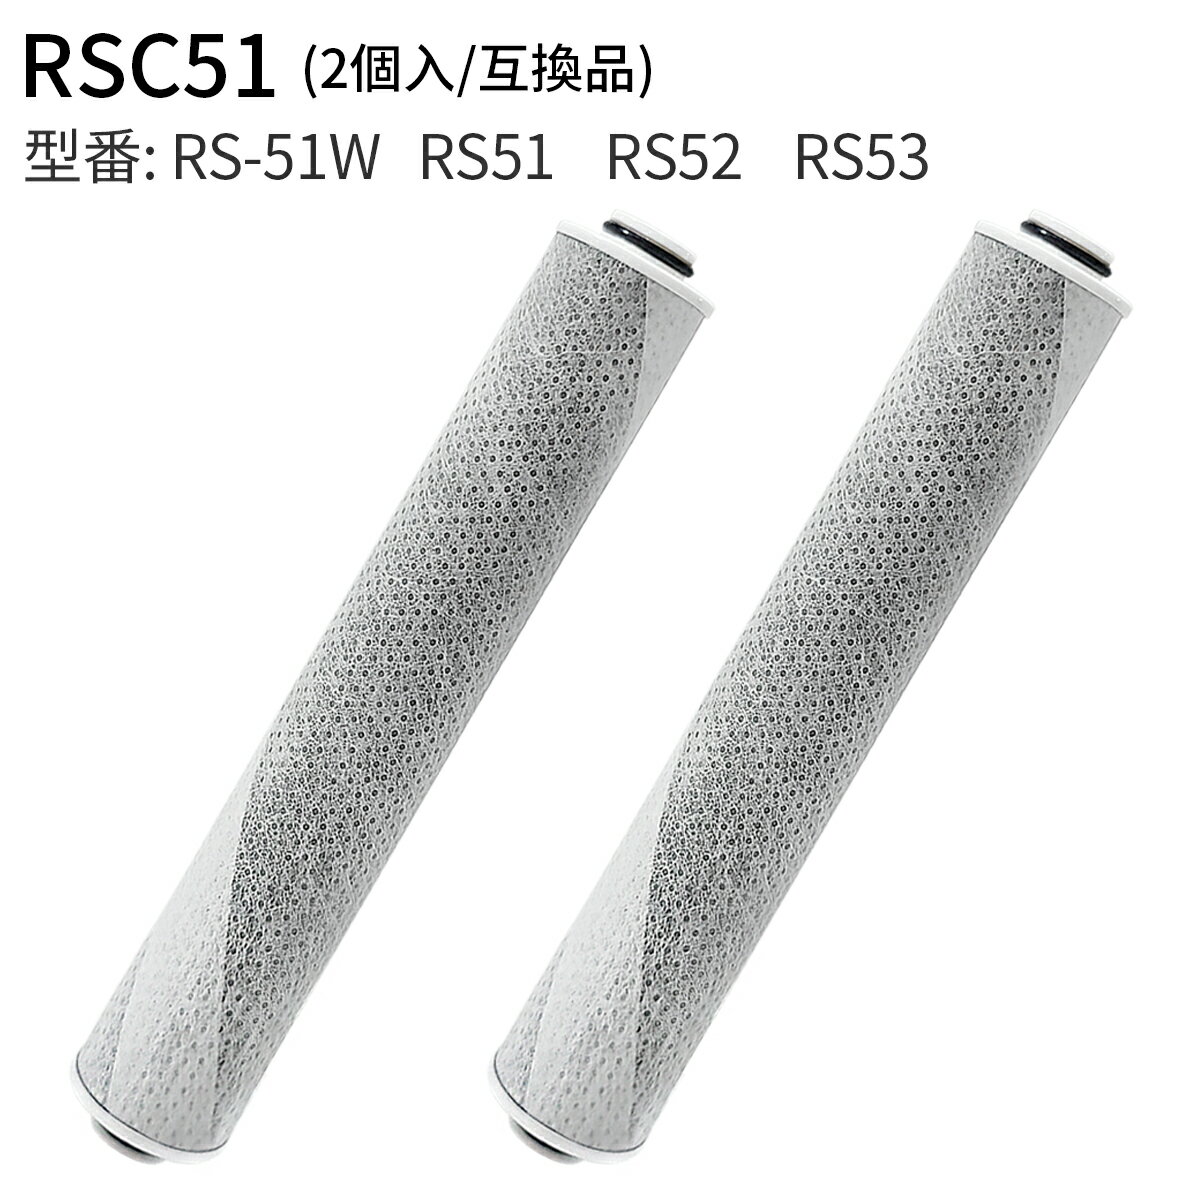 RSC51-2 浄水シャワー カートリッジ 浄水シャワーヘッド rs53 rs52 rs51 交換用カートリッジ 除塩素カ..